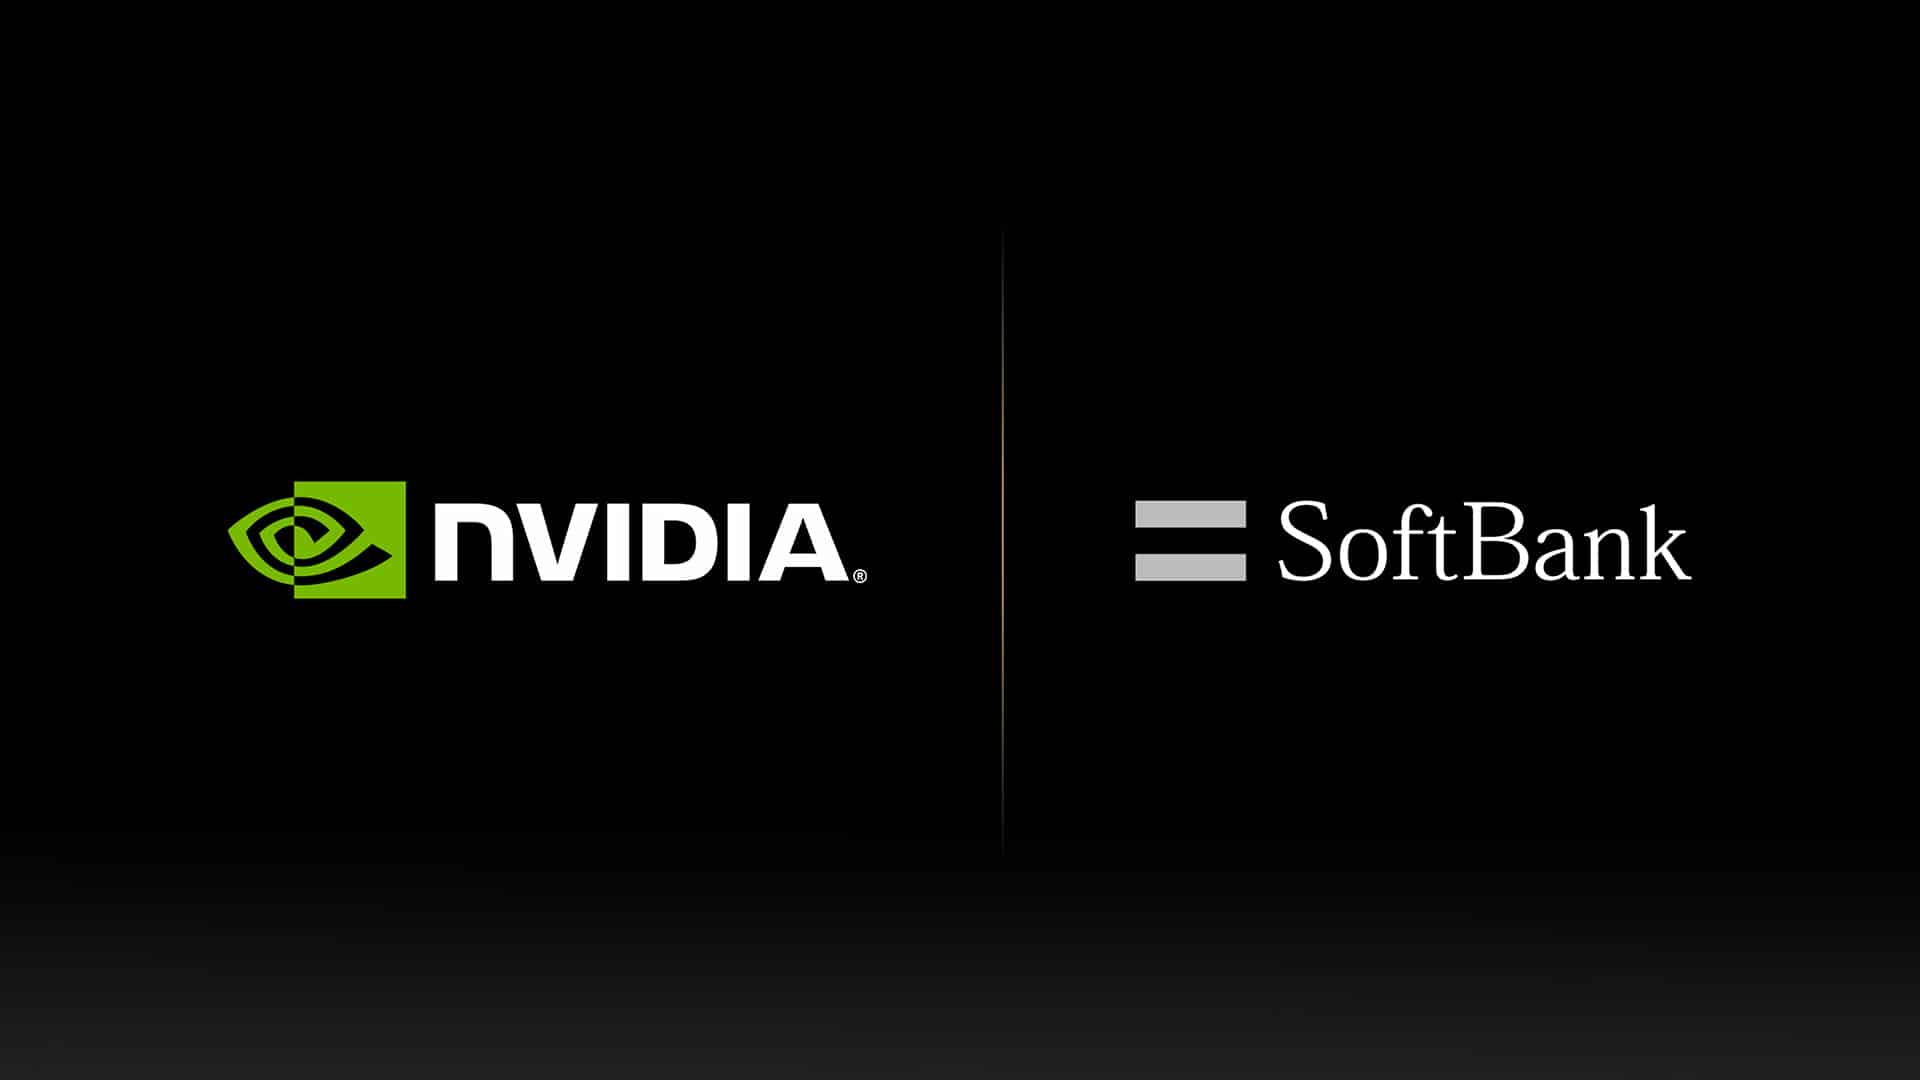 nvidia softbank logos